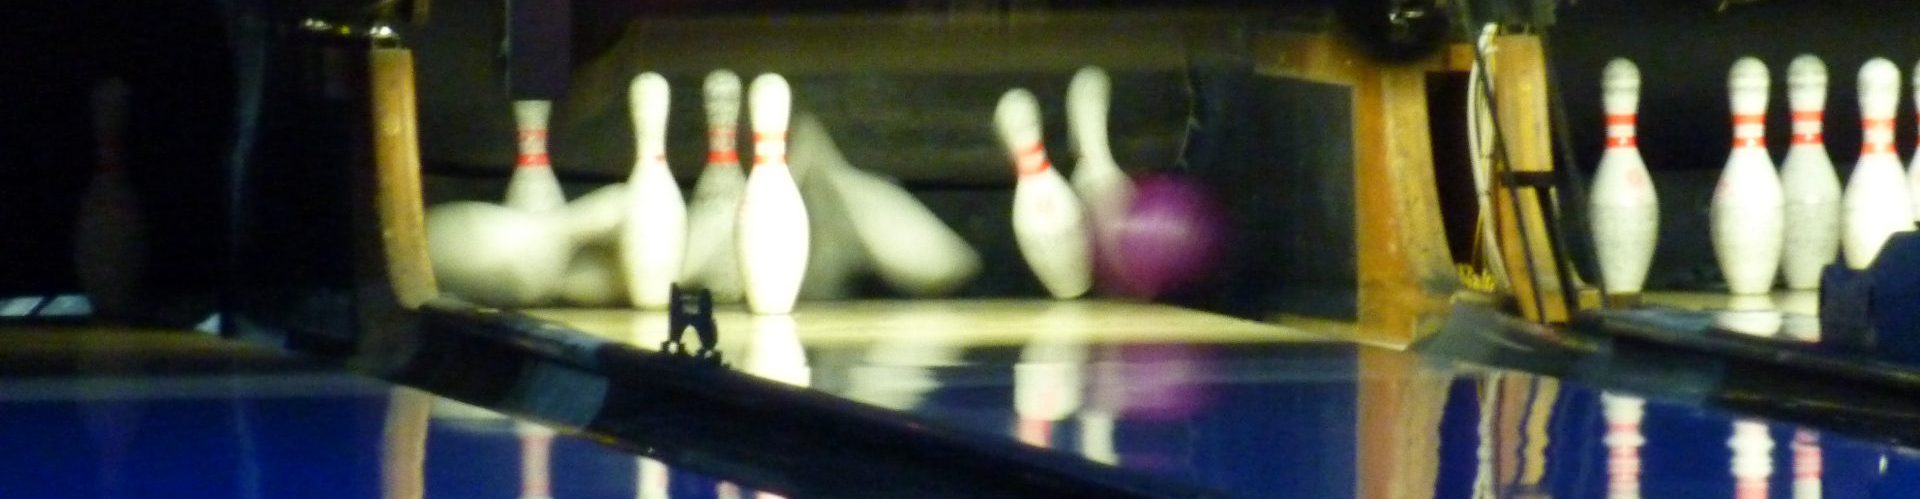 23.02.2018 Strike, Spare, Split und Gutterbälle beim Bowling Club 2.0-Abend